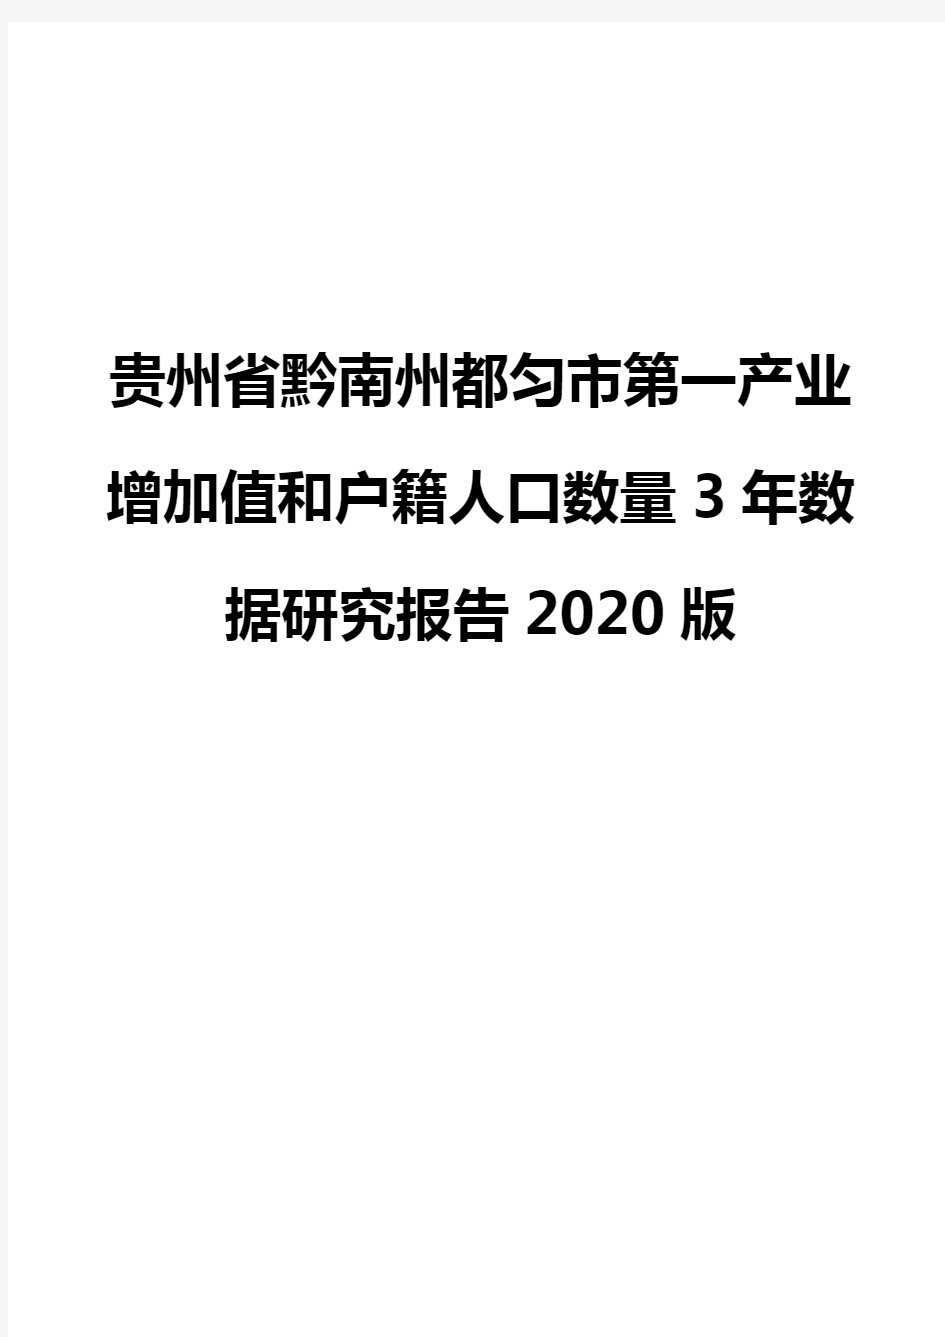 贵州省黔南州都匀市第一产业增加值和户籍人口数量3年数据研究报告2020版